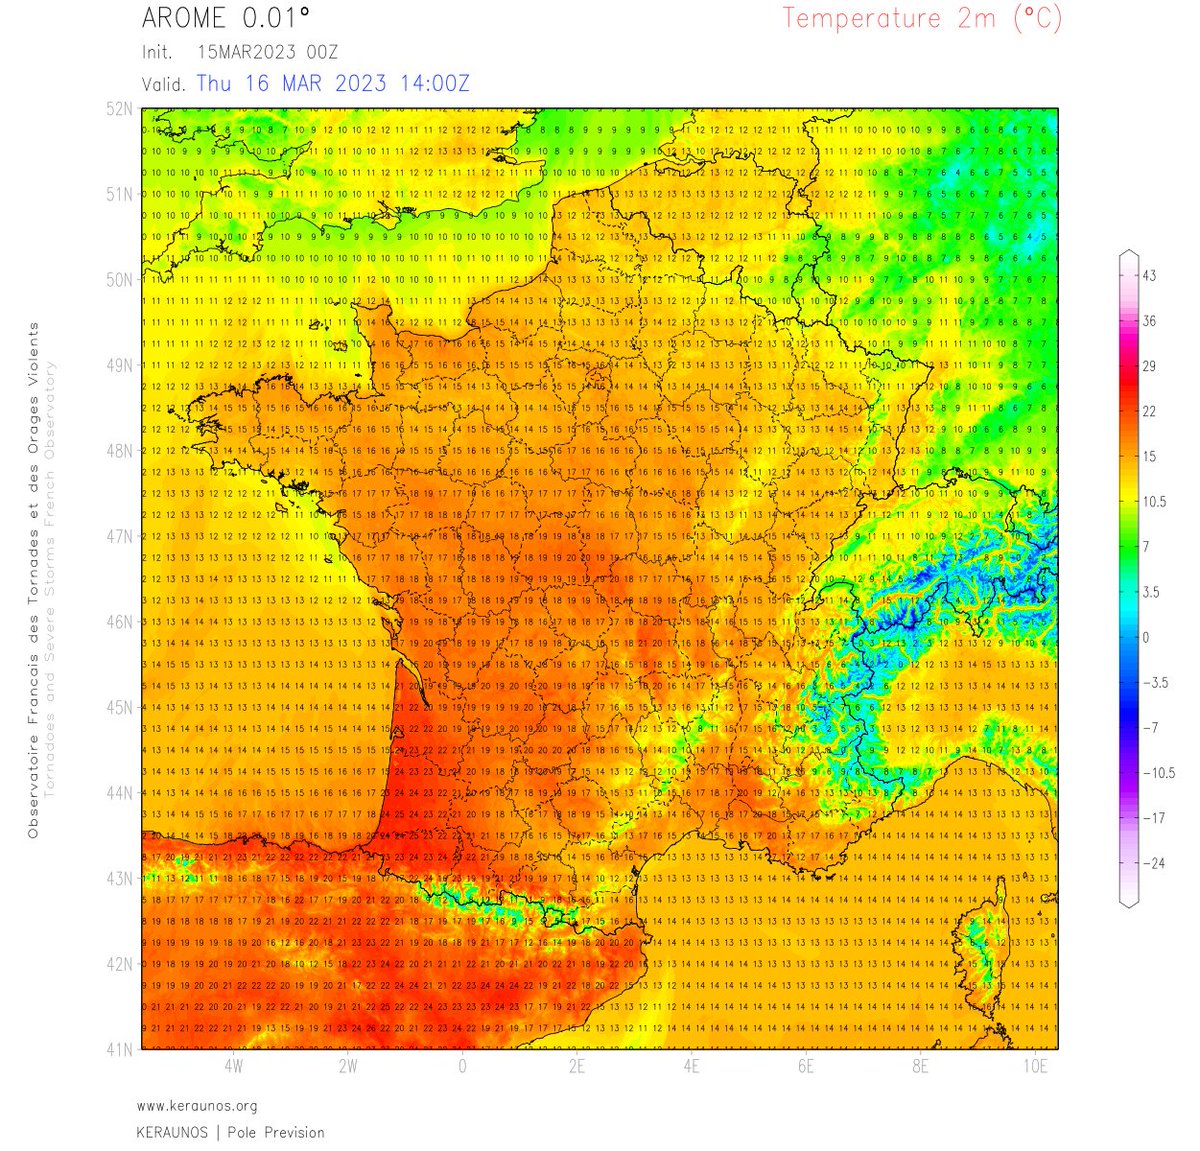 Nouvel épisode de #chaleur dans le sud-ouest prévu demain jeudi avec 25/26°C possibles en #Aquitaine.
La douceur remontera jusqu'au Centre où les 20°C devraient être atteints. 